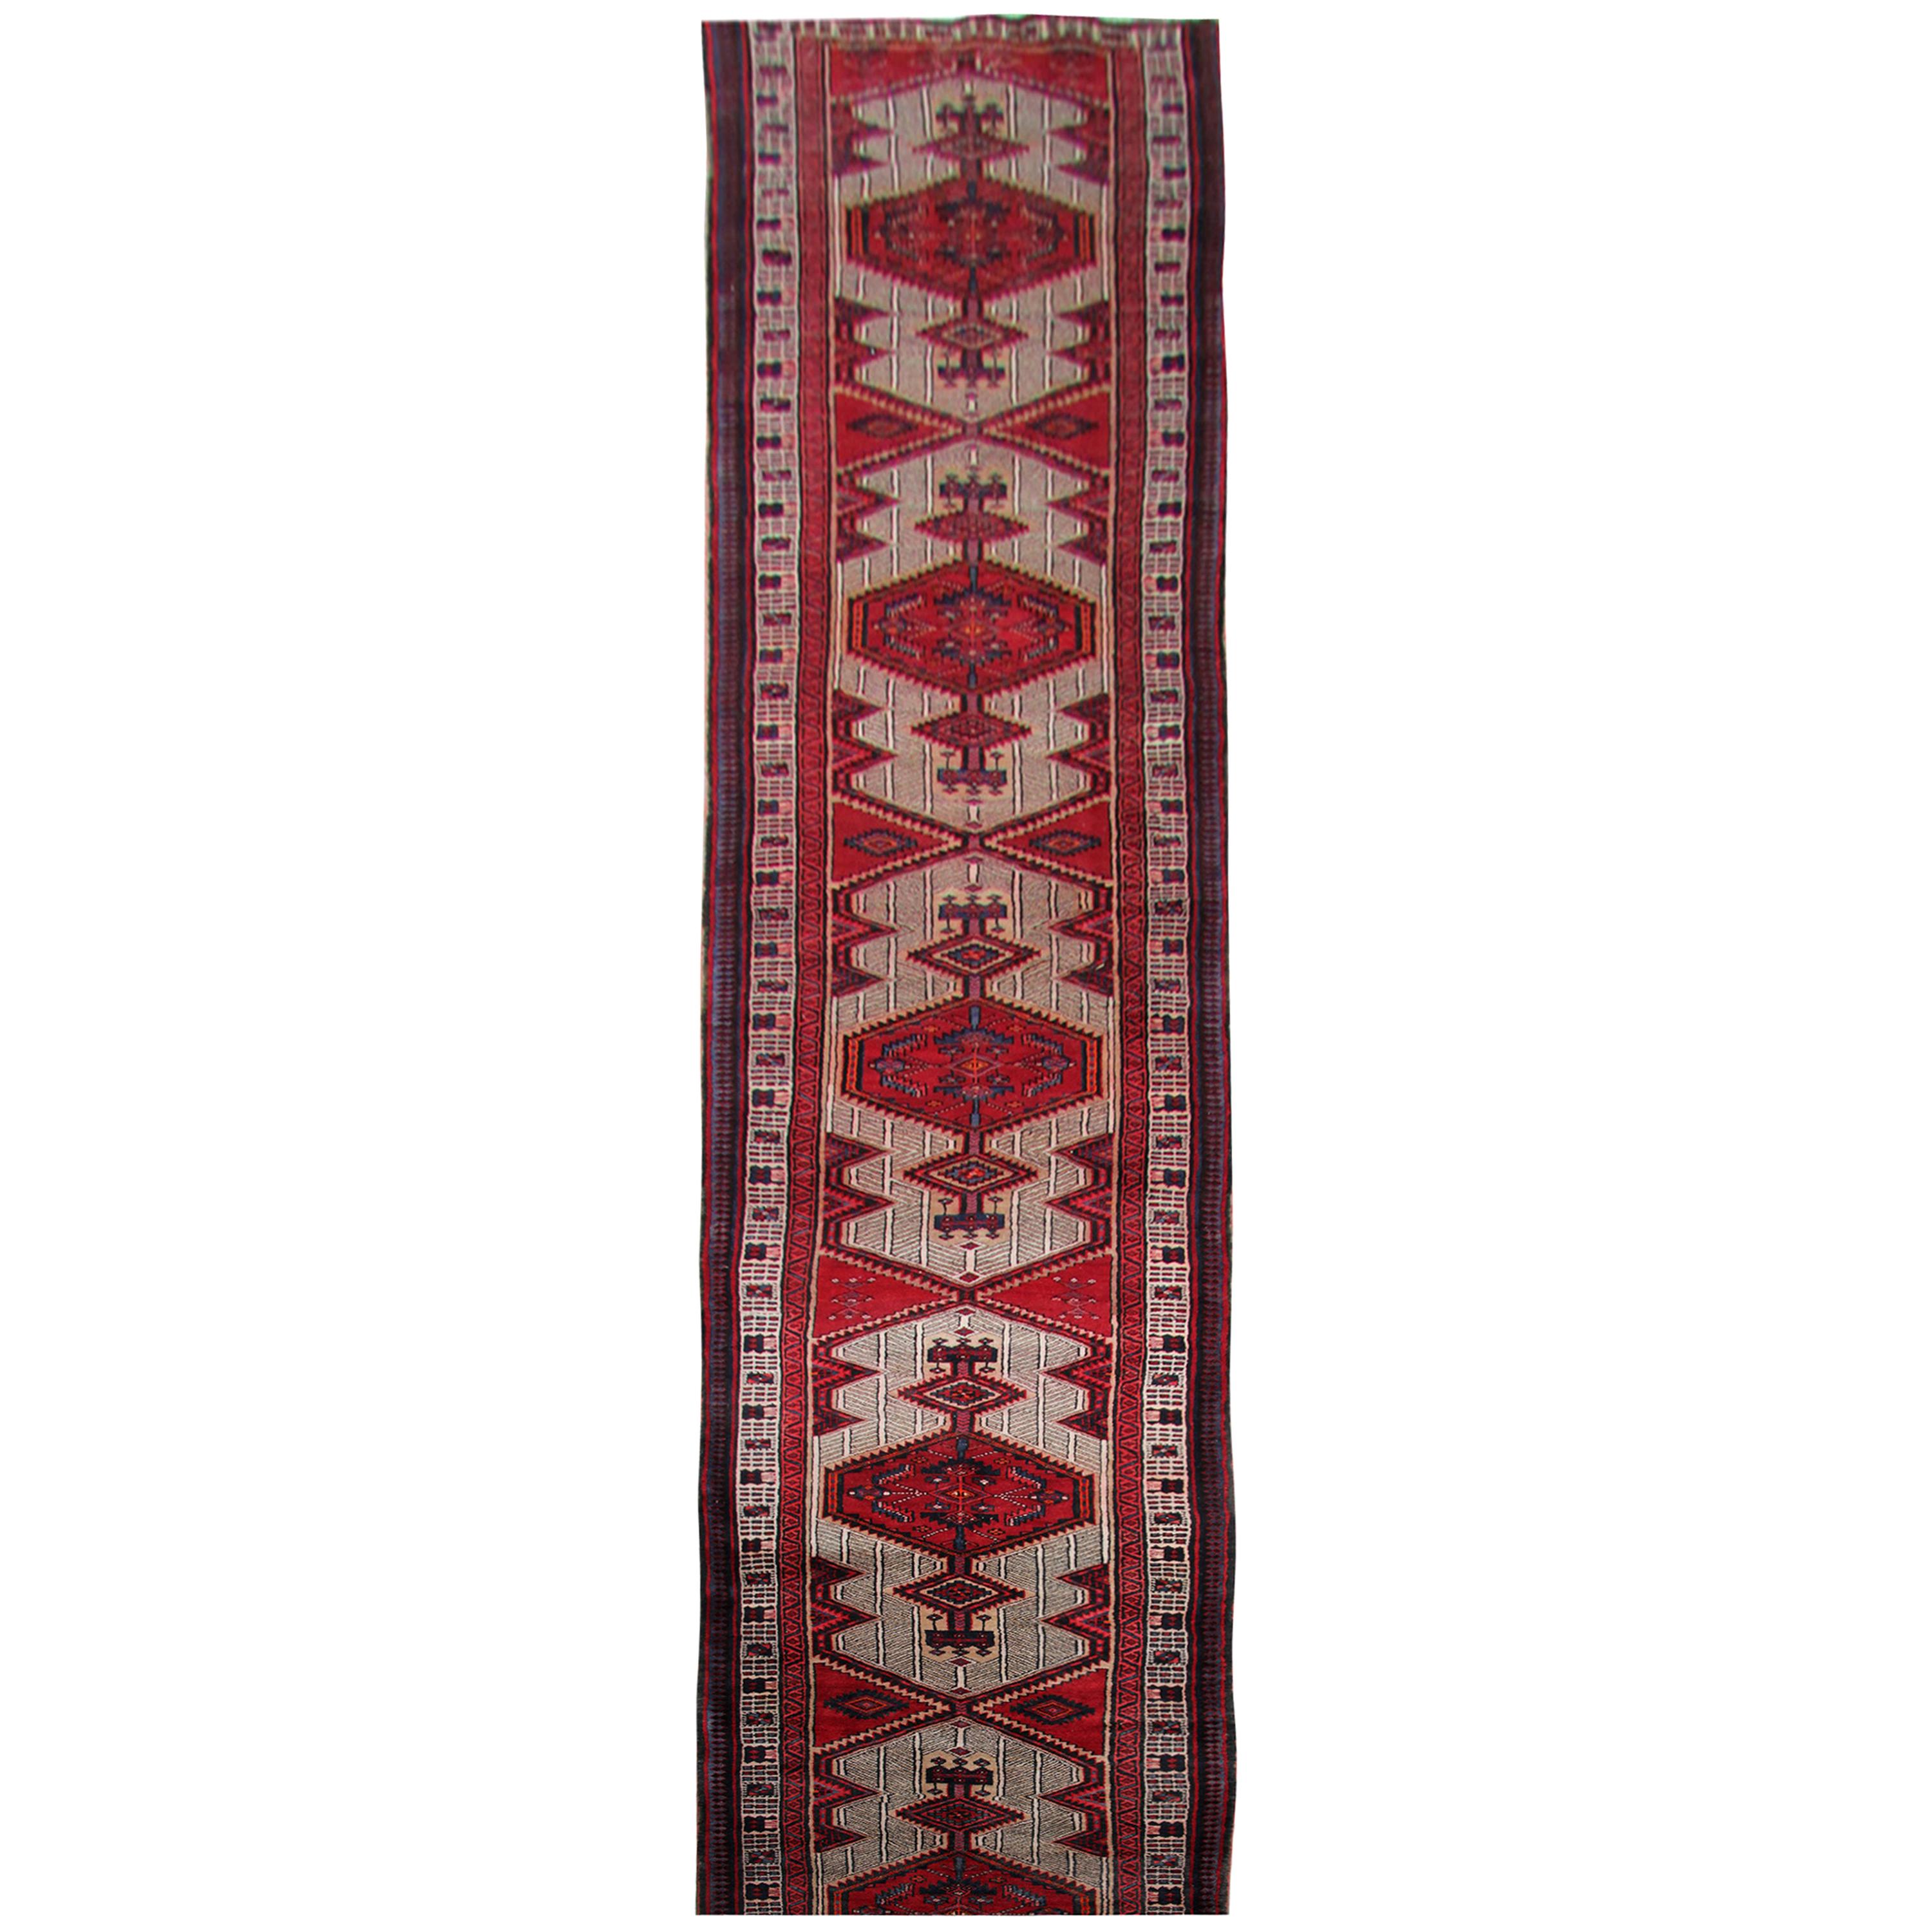 Handmade Runners and Rugs, Oriental Carpet Red Wool Vintage Rugs